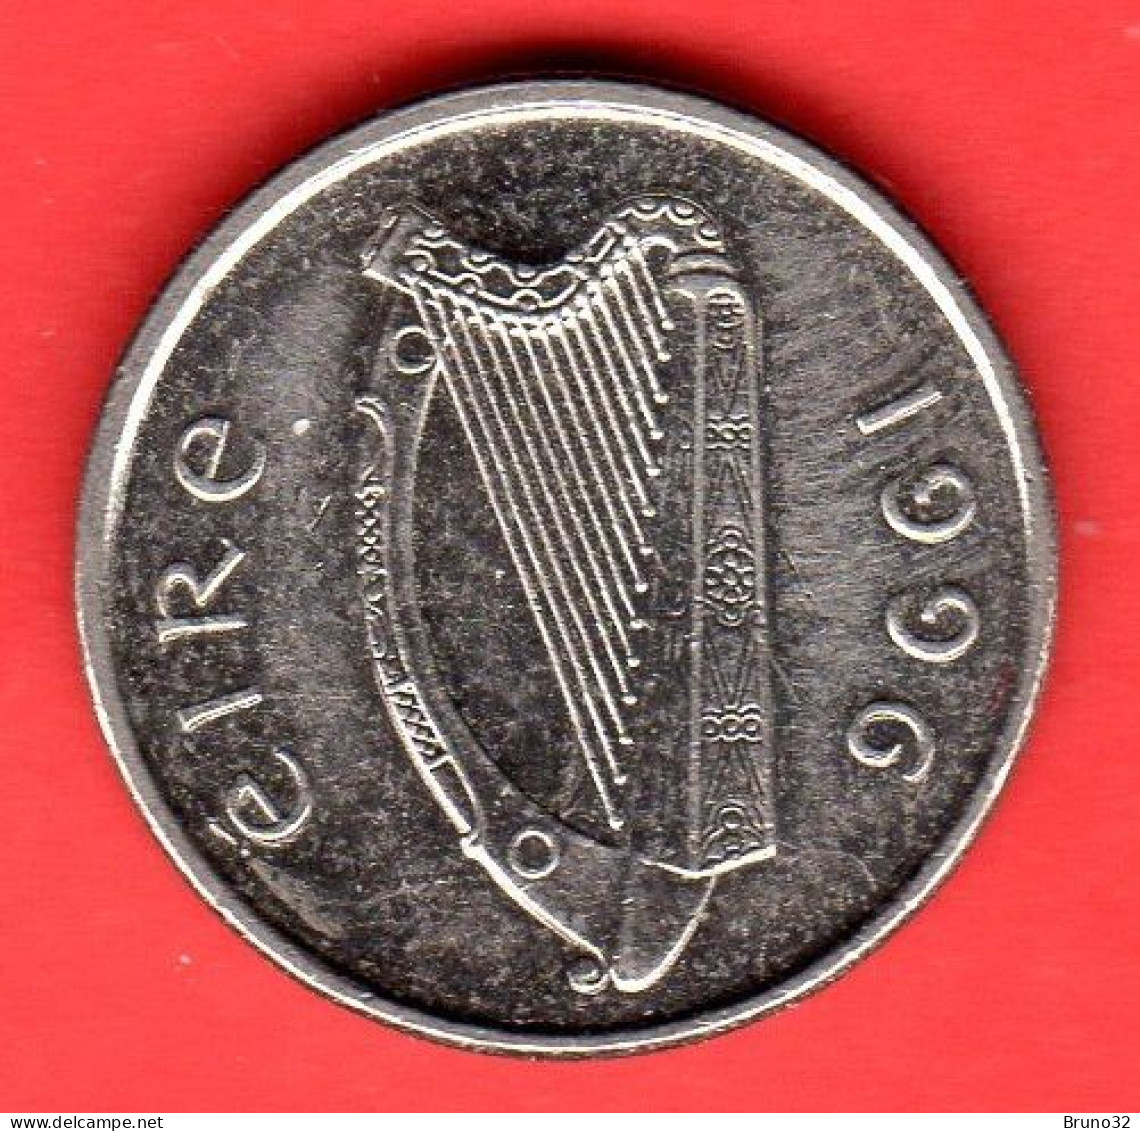 IRLANDA - IRELAND - EIRE - 1996 - 5 Pence - QFDC/aUNC - Come Da Foto - Ierland